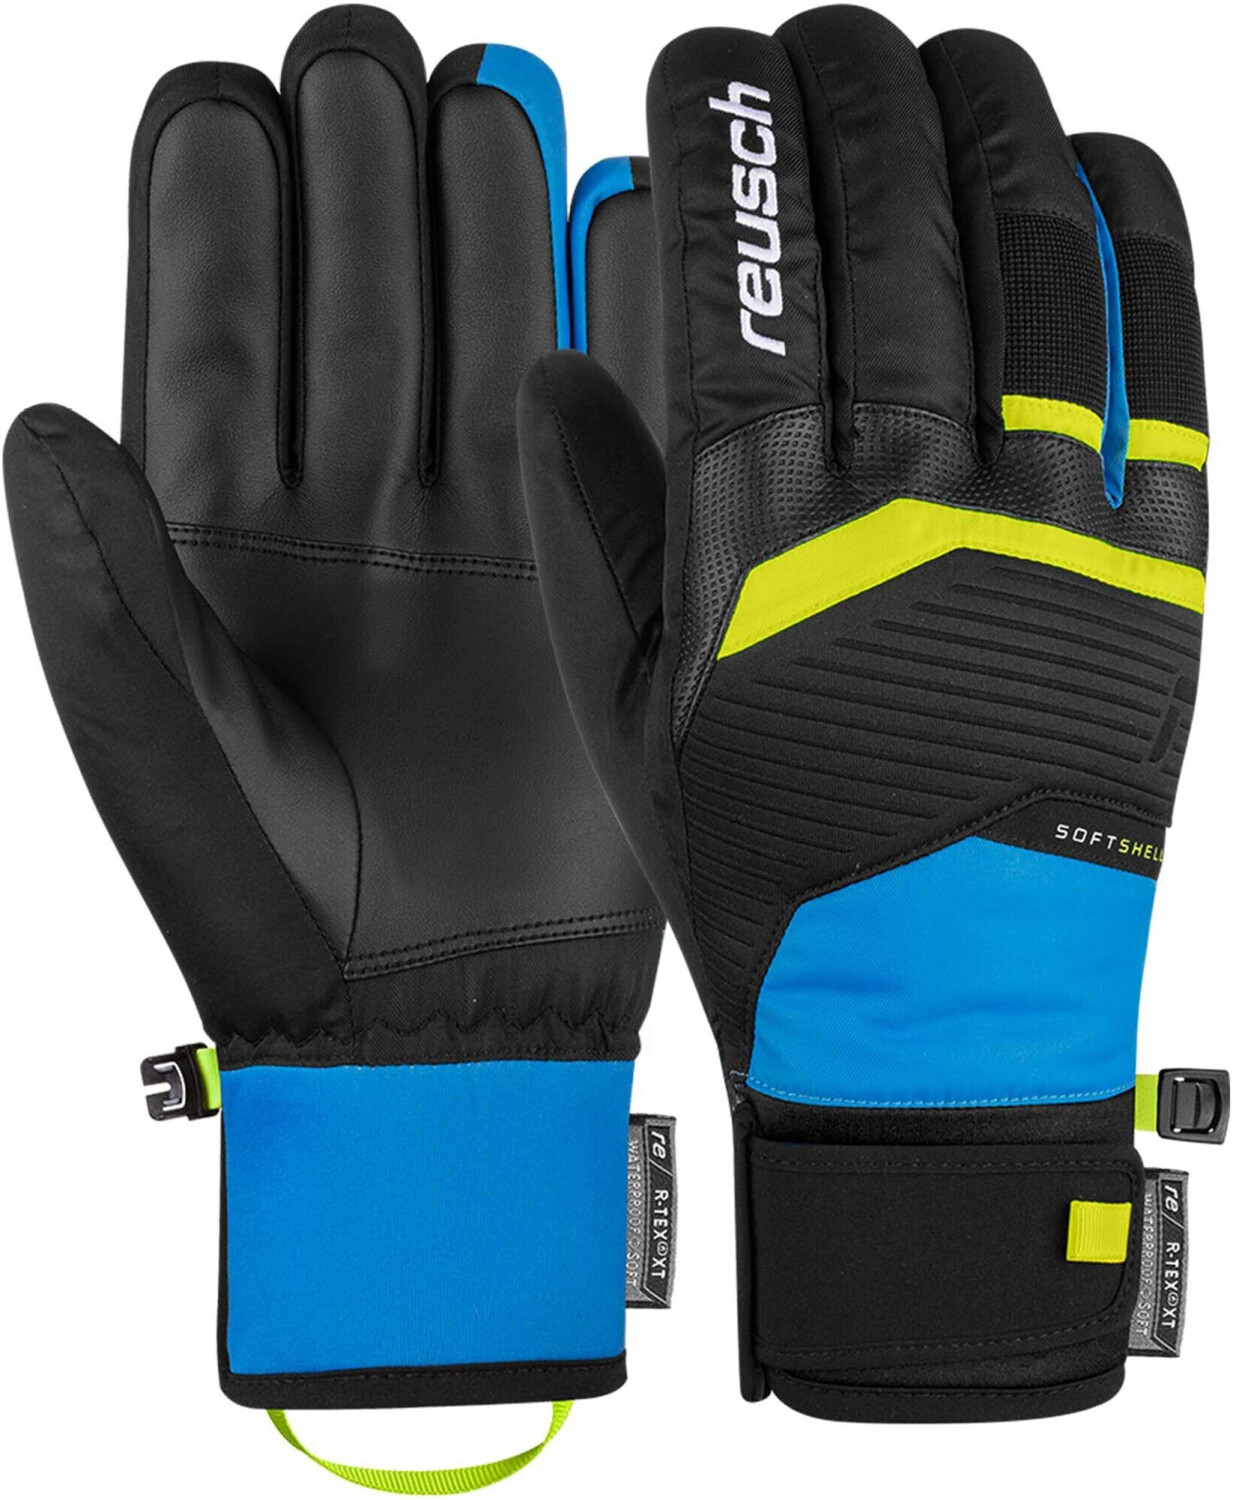 Reusch | 44,95 R-TEX Venom Preisvergleich XT € bei schwarz/blau/gelb ab Handschuhe (6101205)